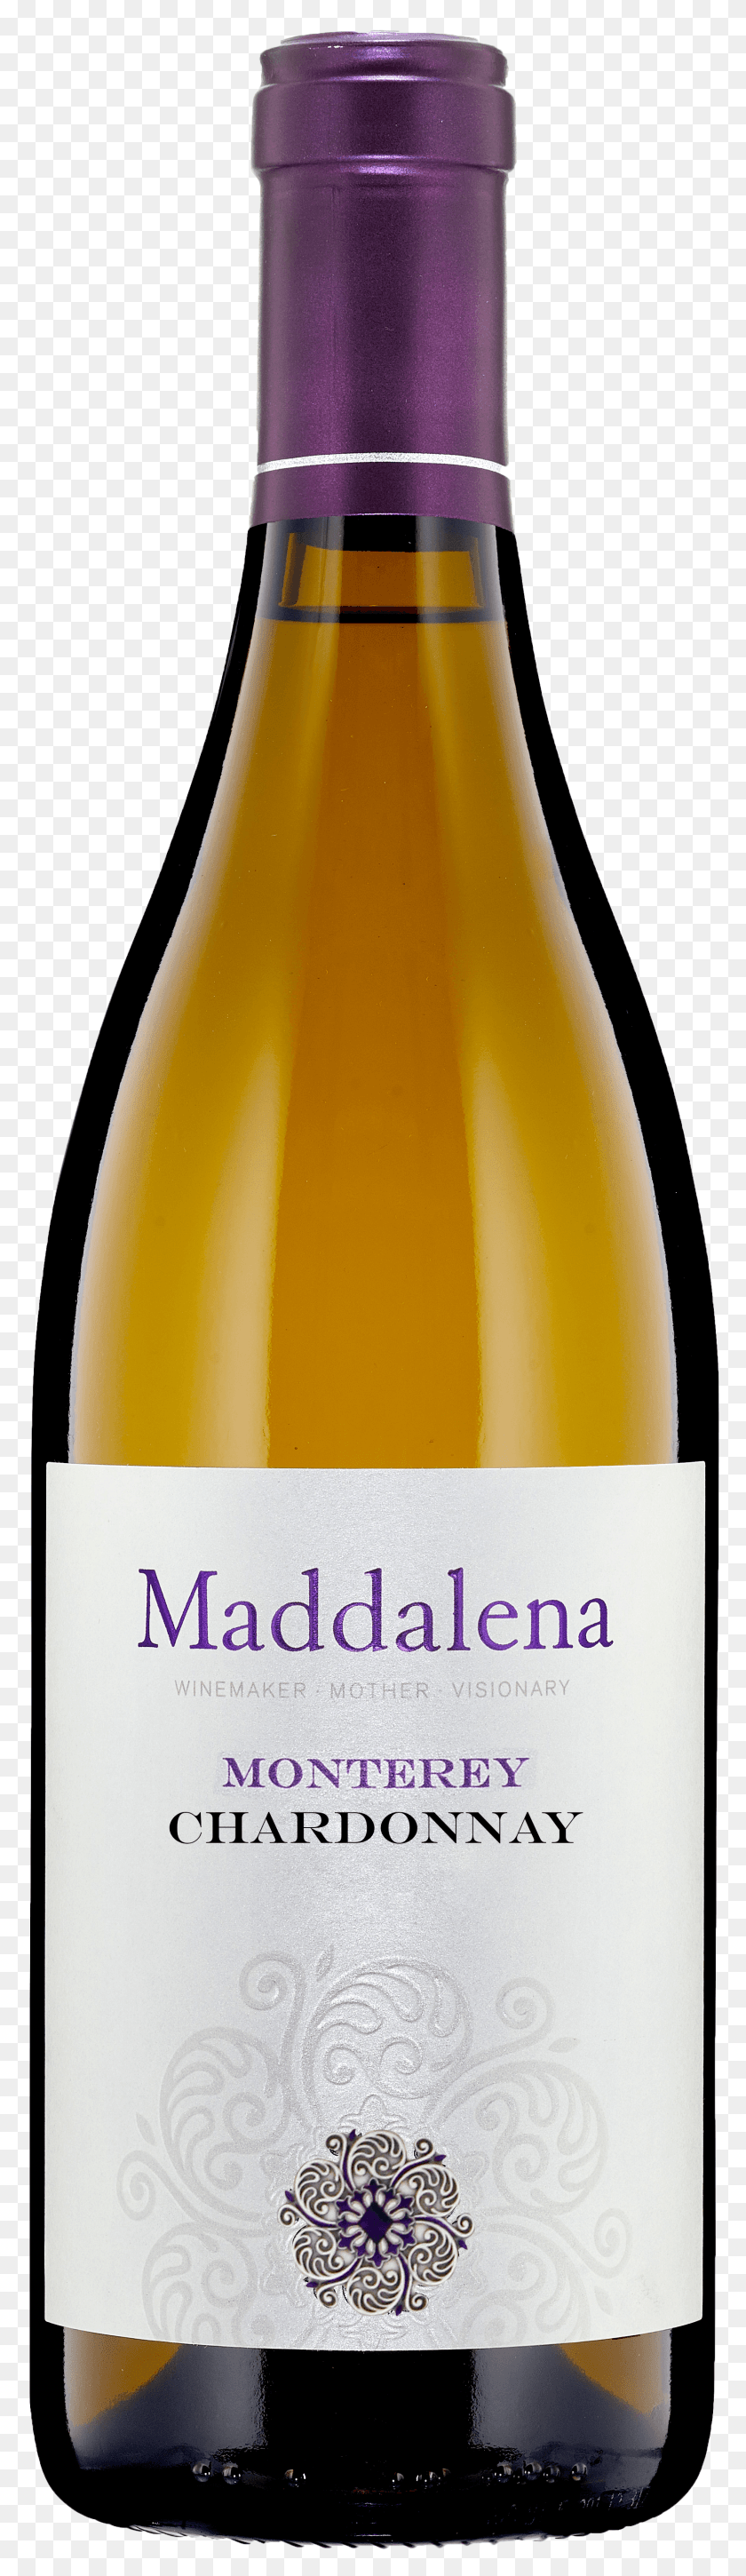 1767x6435 Disparo De Botella Maddalena Chardonnay Hd Png